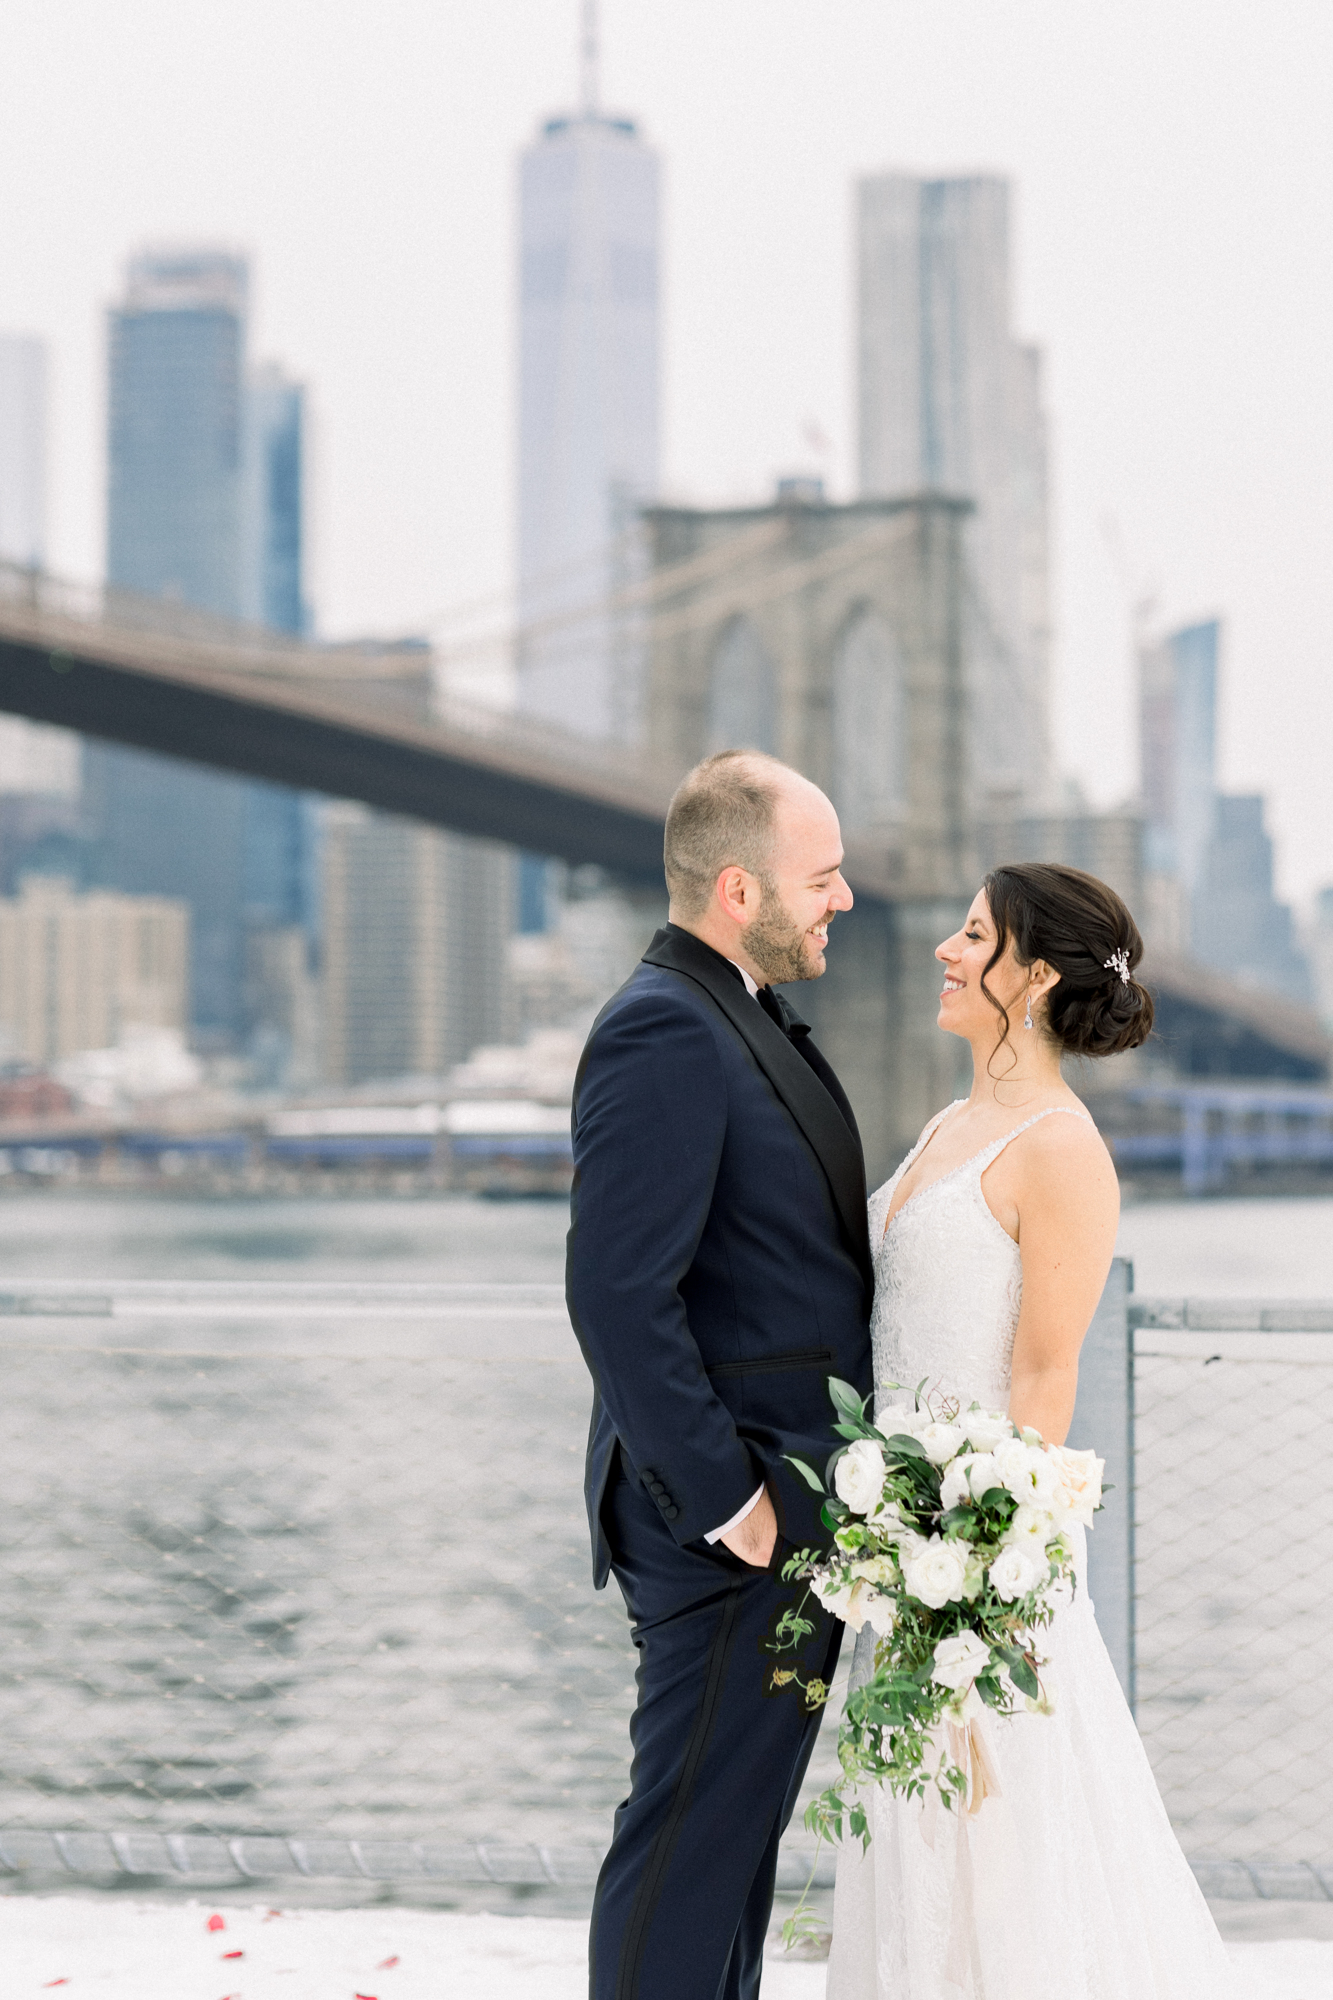 Dumbo wedding photos in Brooklyn